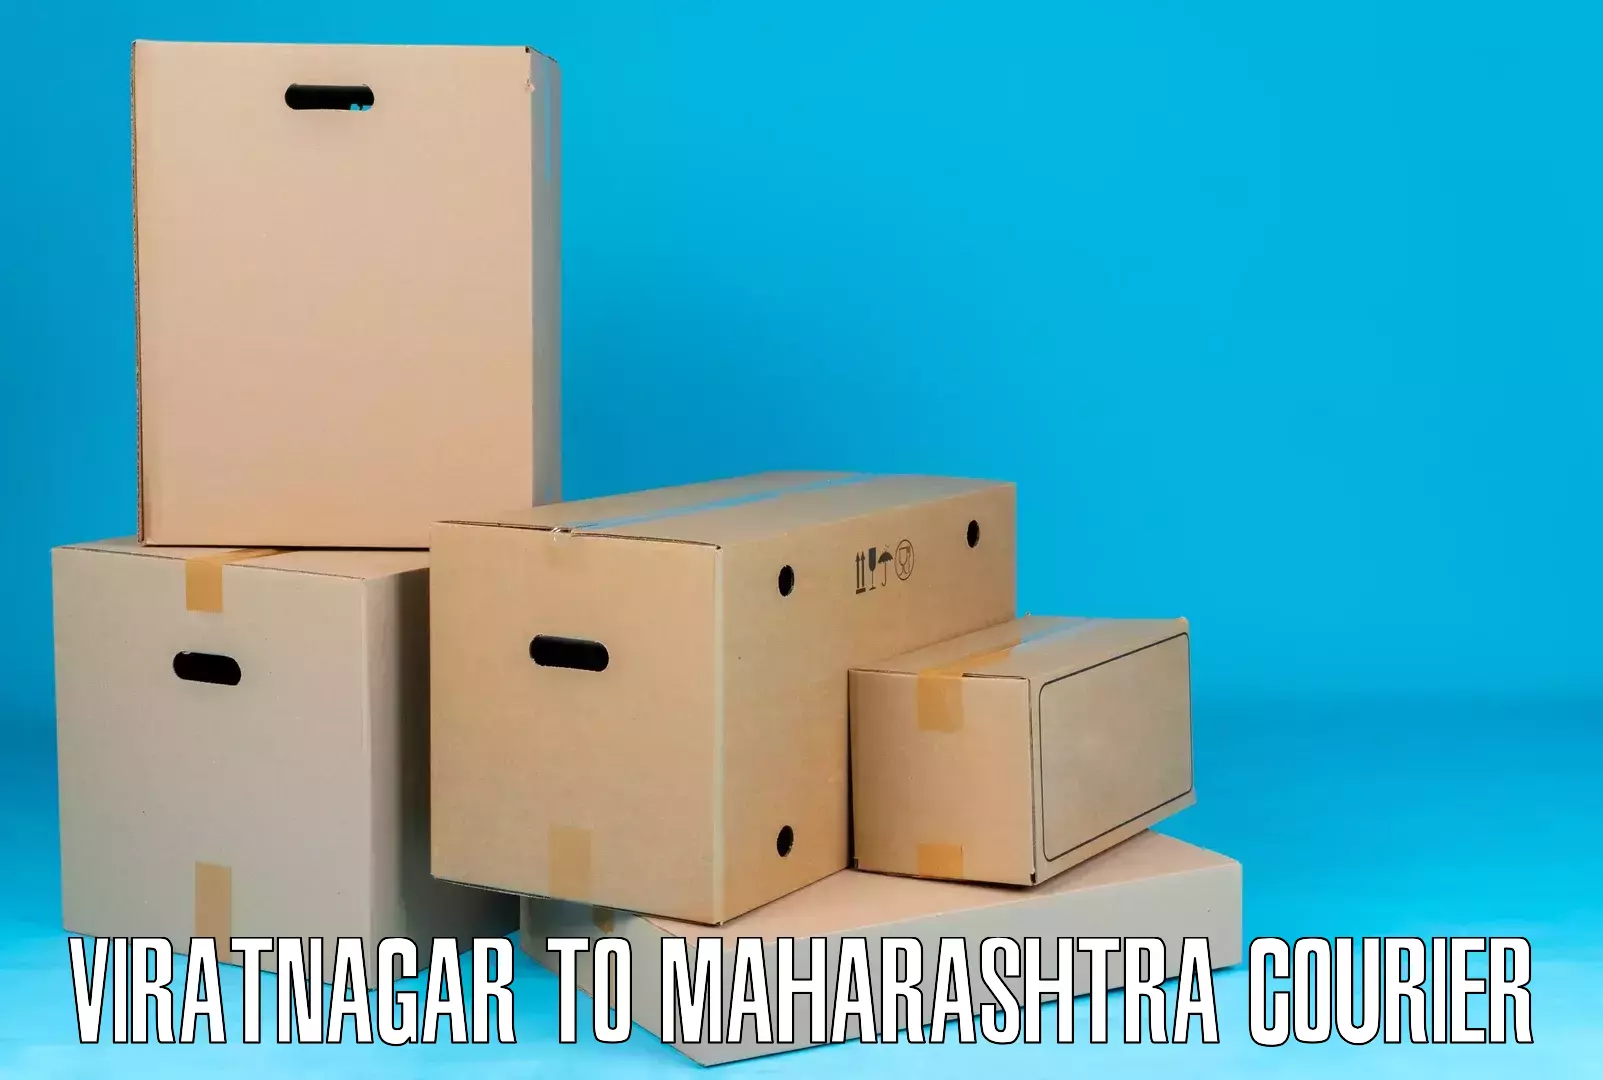 Speedy delivery service Viratnagar to Warora